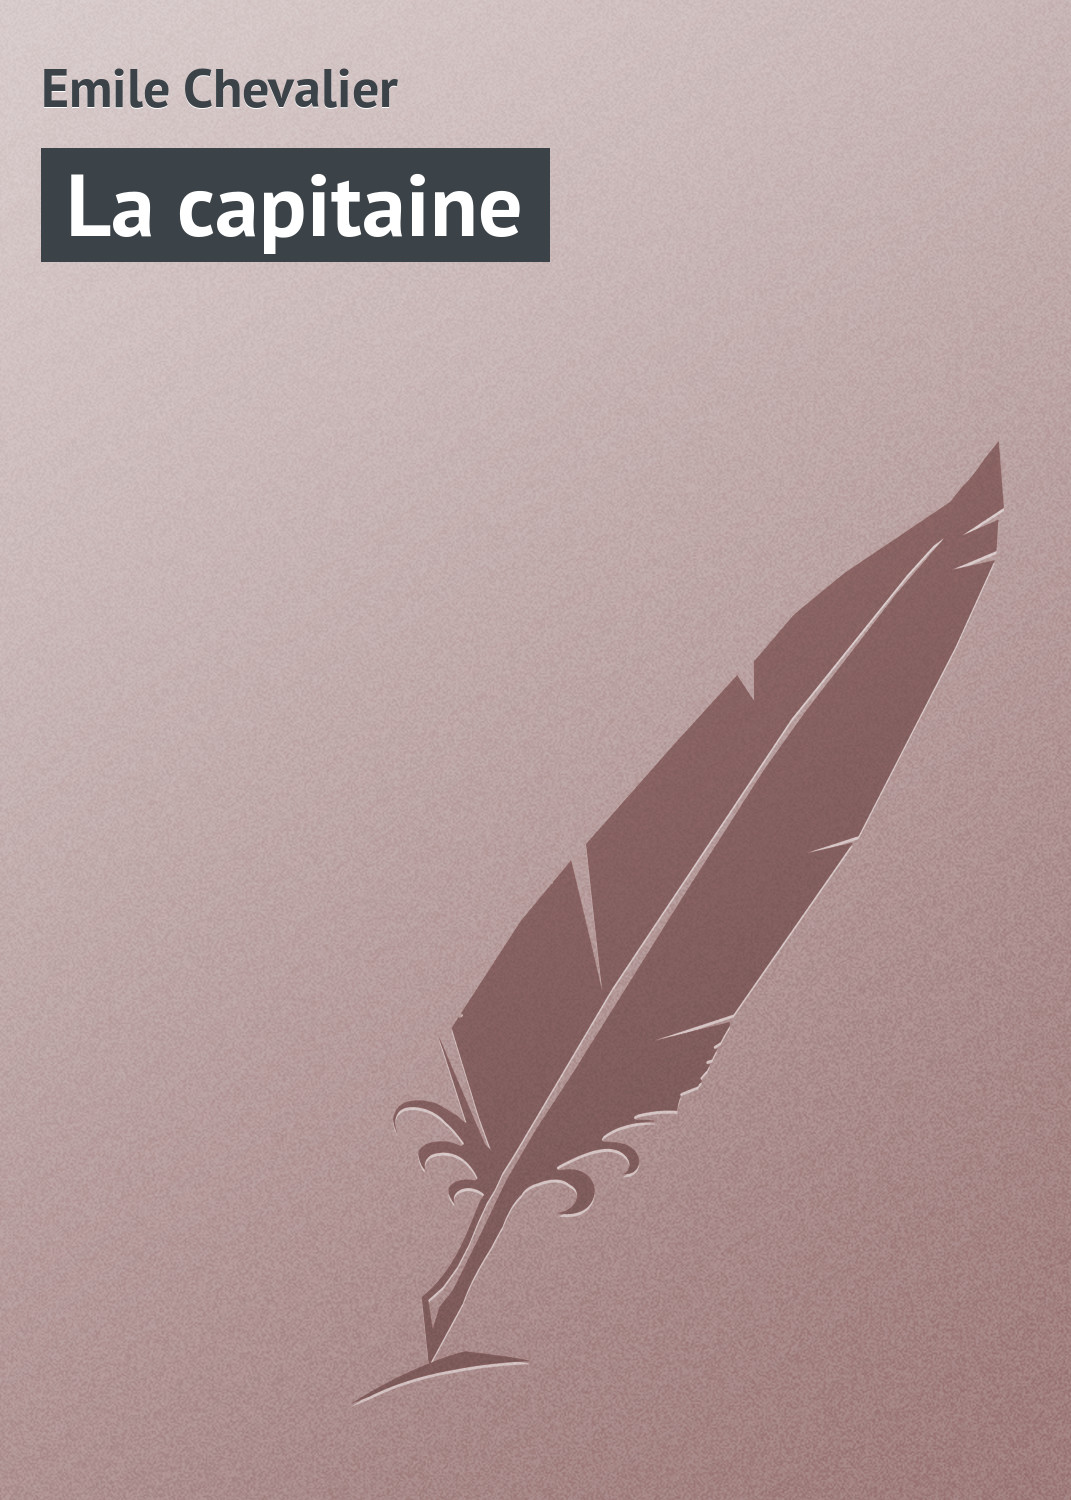 Книга La capitaine из серии , созданная Emile Chevalier, может относится к жанру Зарубежная старинная литература, Зарубежная классика. Стоимость электронной книги La capitaine с идентификатором 21104918 составляет 5.99 руб.